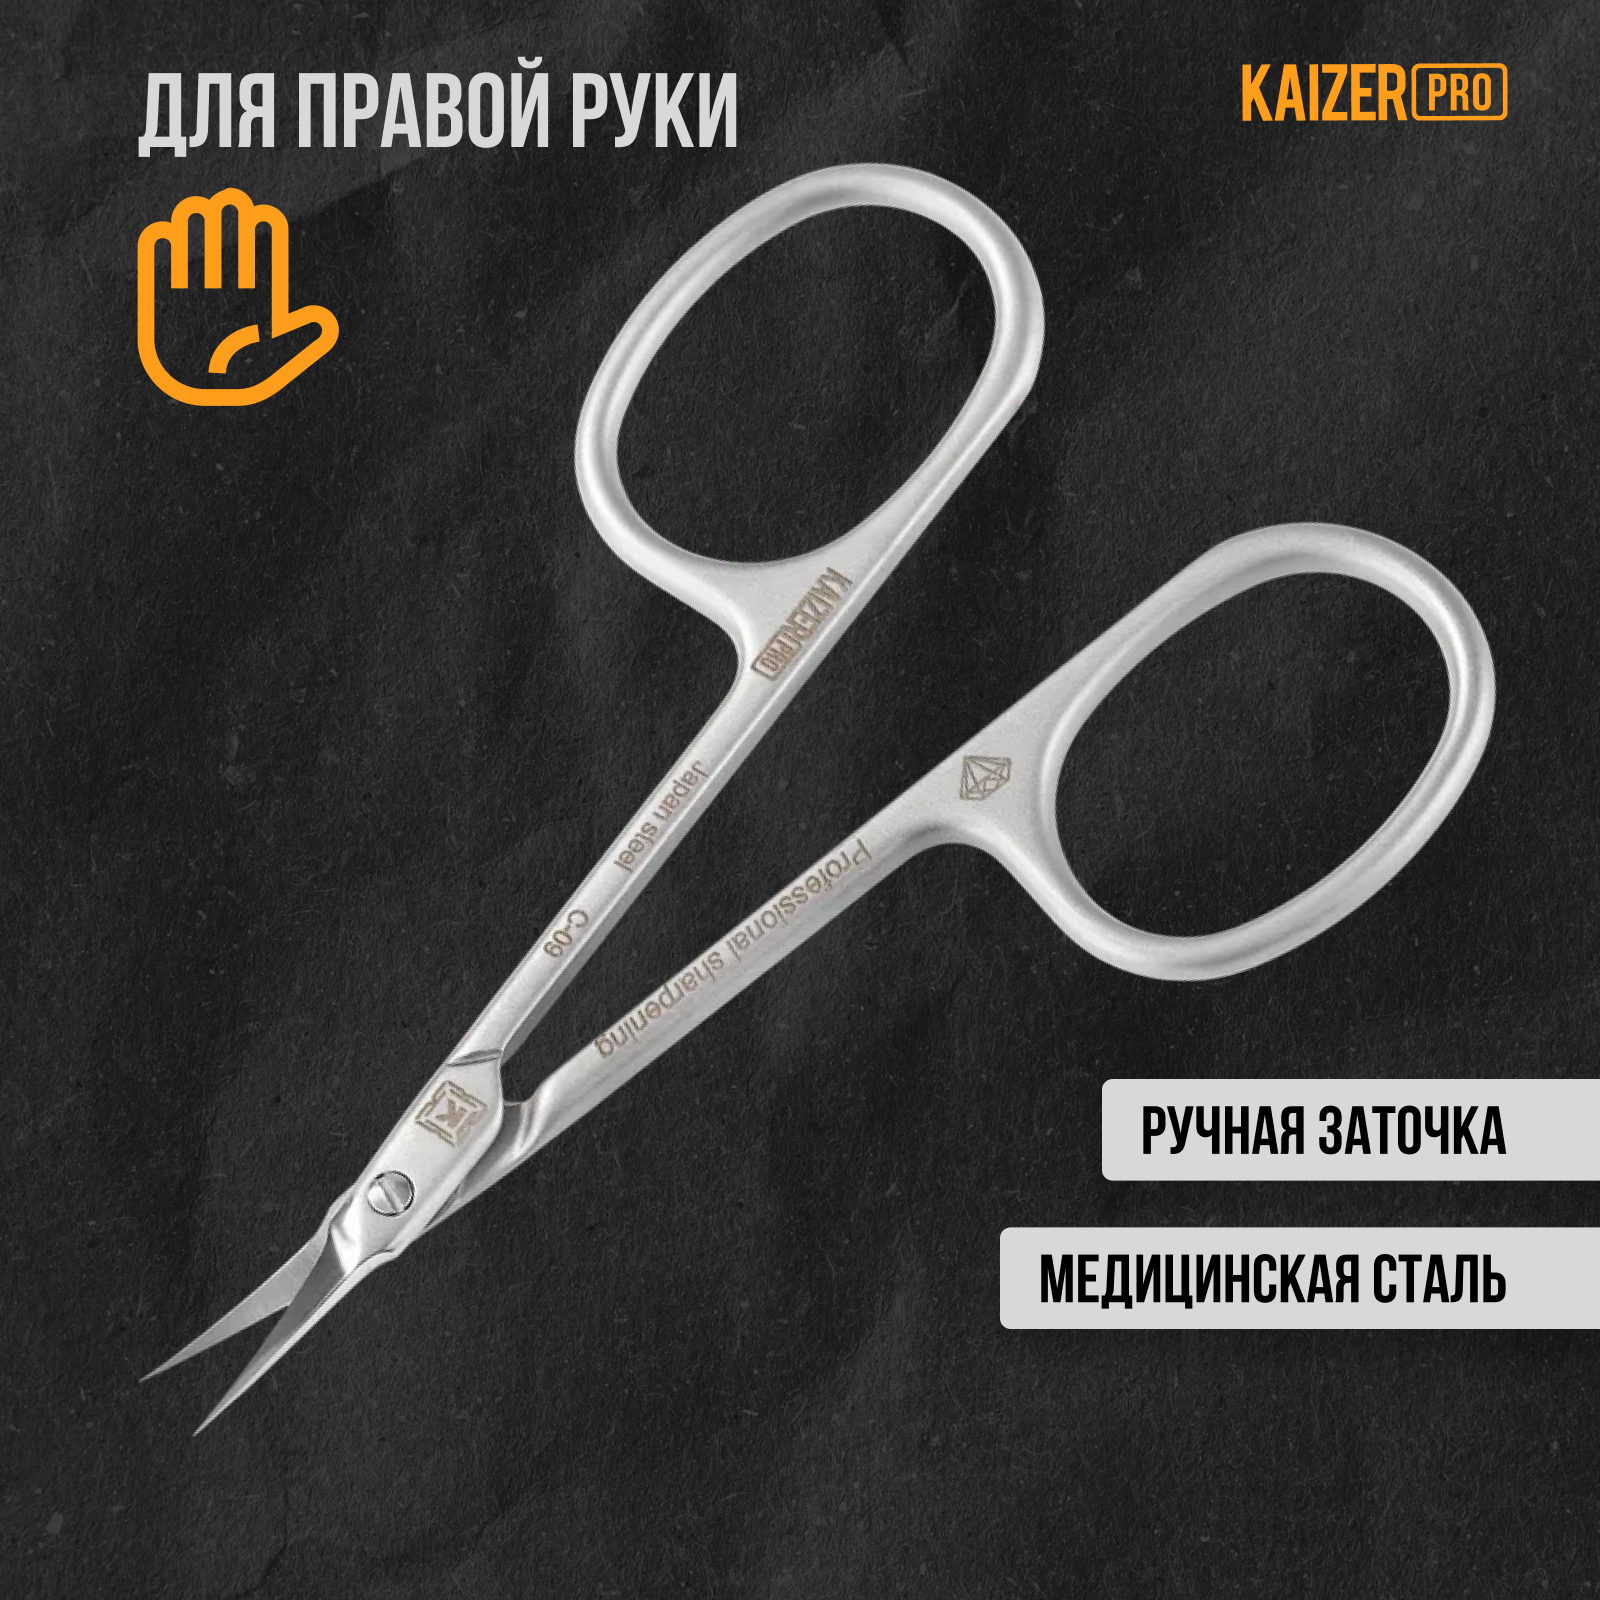 Ножницы маникюрные Kaizer pro для кутикулы профессиональная заточка 90 мм сатин хром